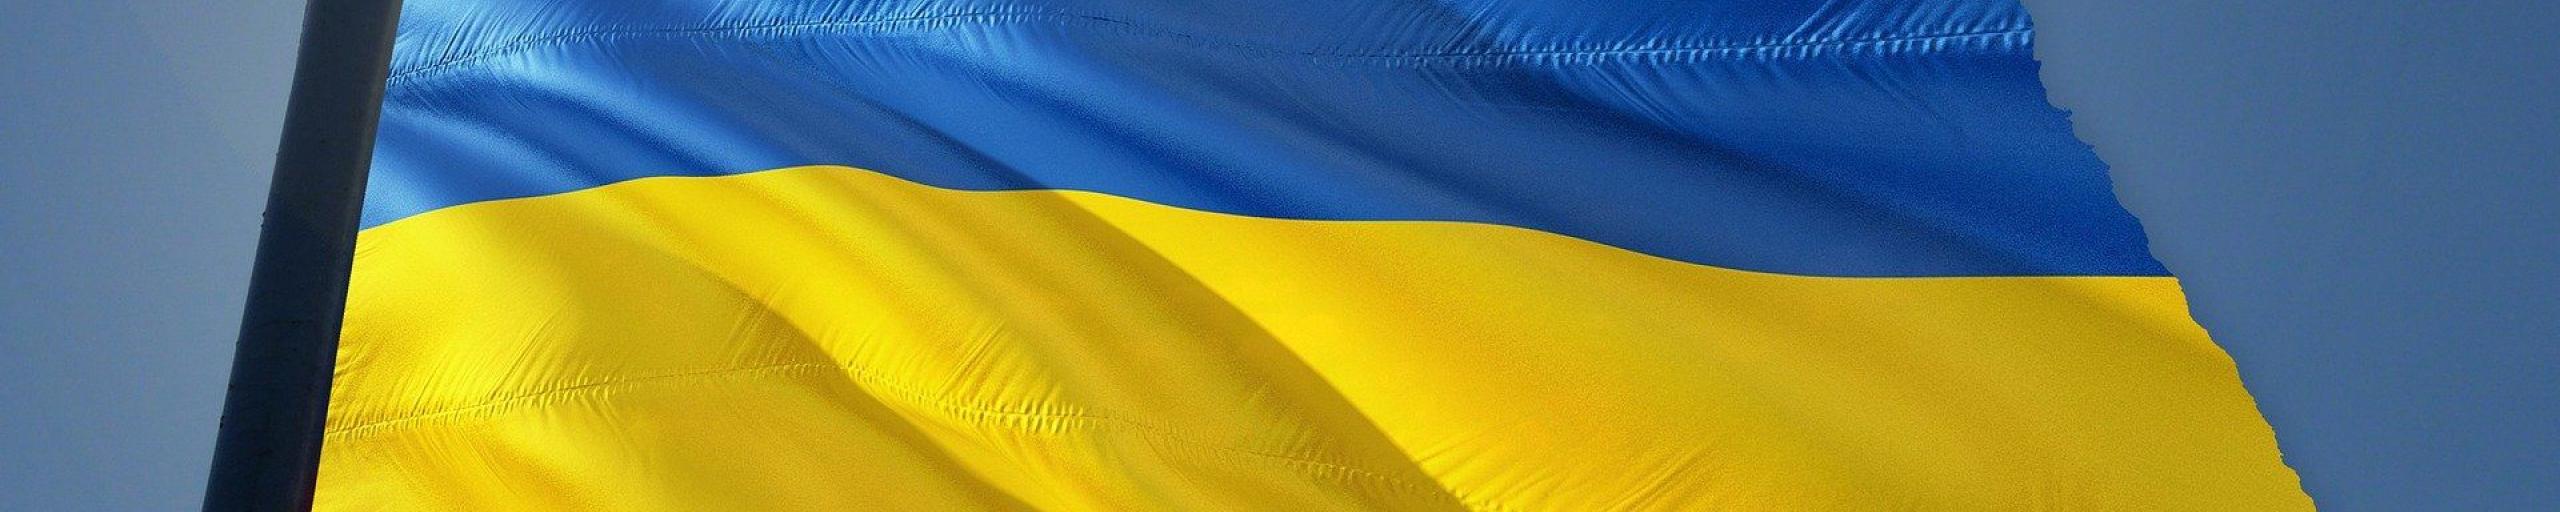 Vlaggenstok met een blauw-gele vlag van Oekraïne